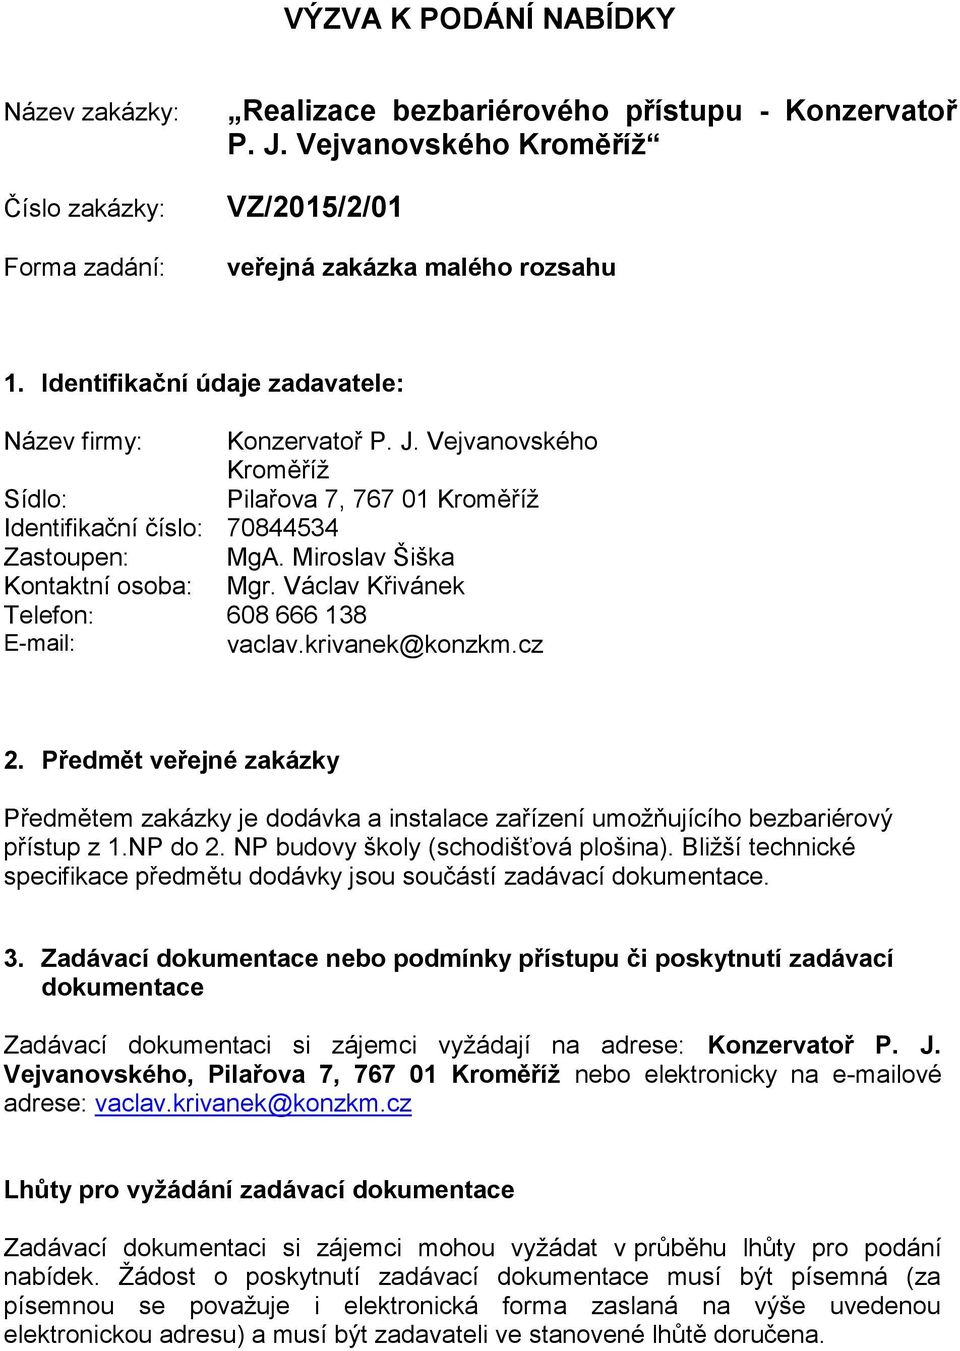 Miroslav Šiška Kontaktní osoba: Mgr. Václav Křivánek Telefon: 608 666 138 E-mail: vaclav.krivanek@konzkm.cz 2.